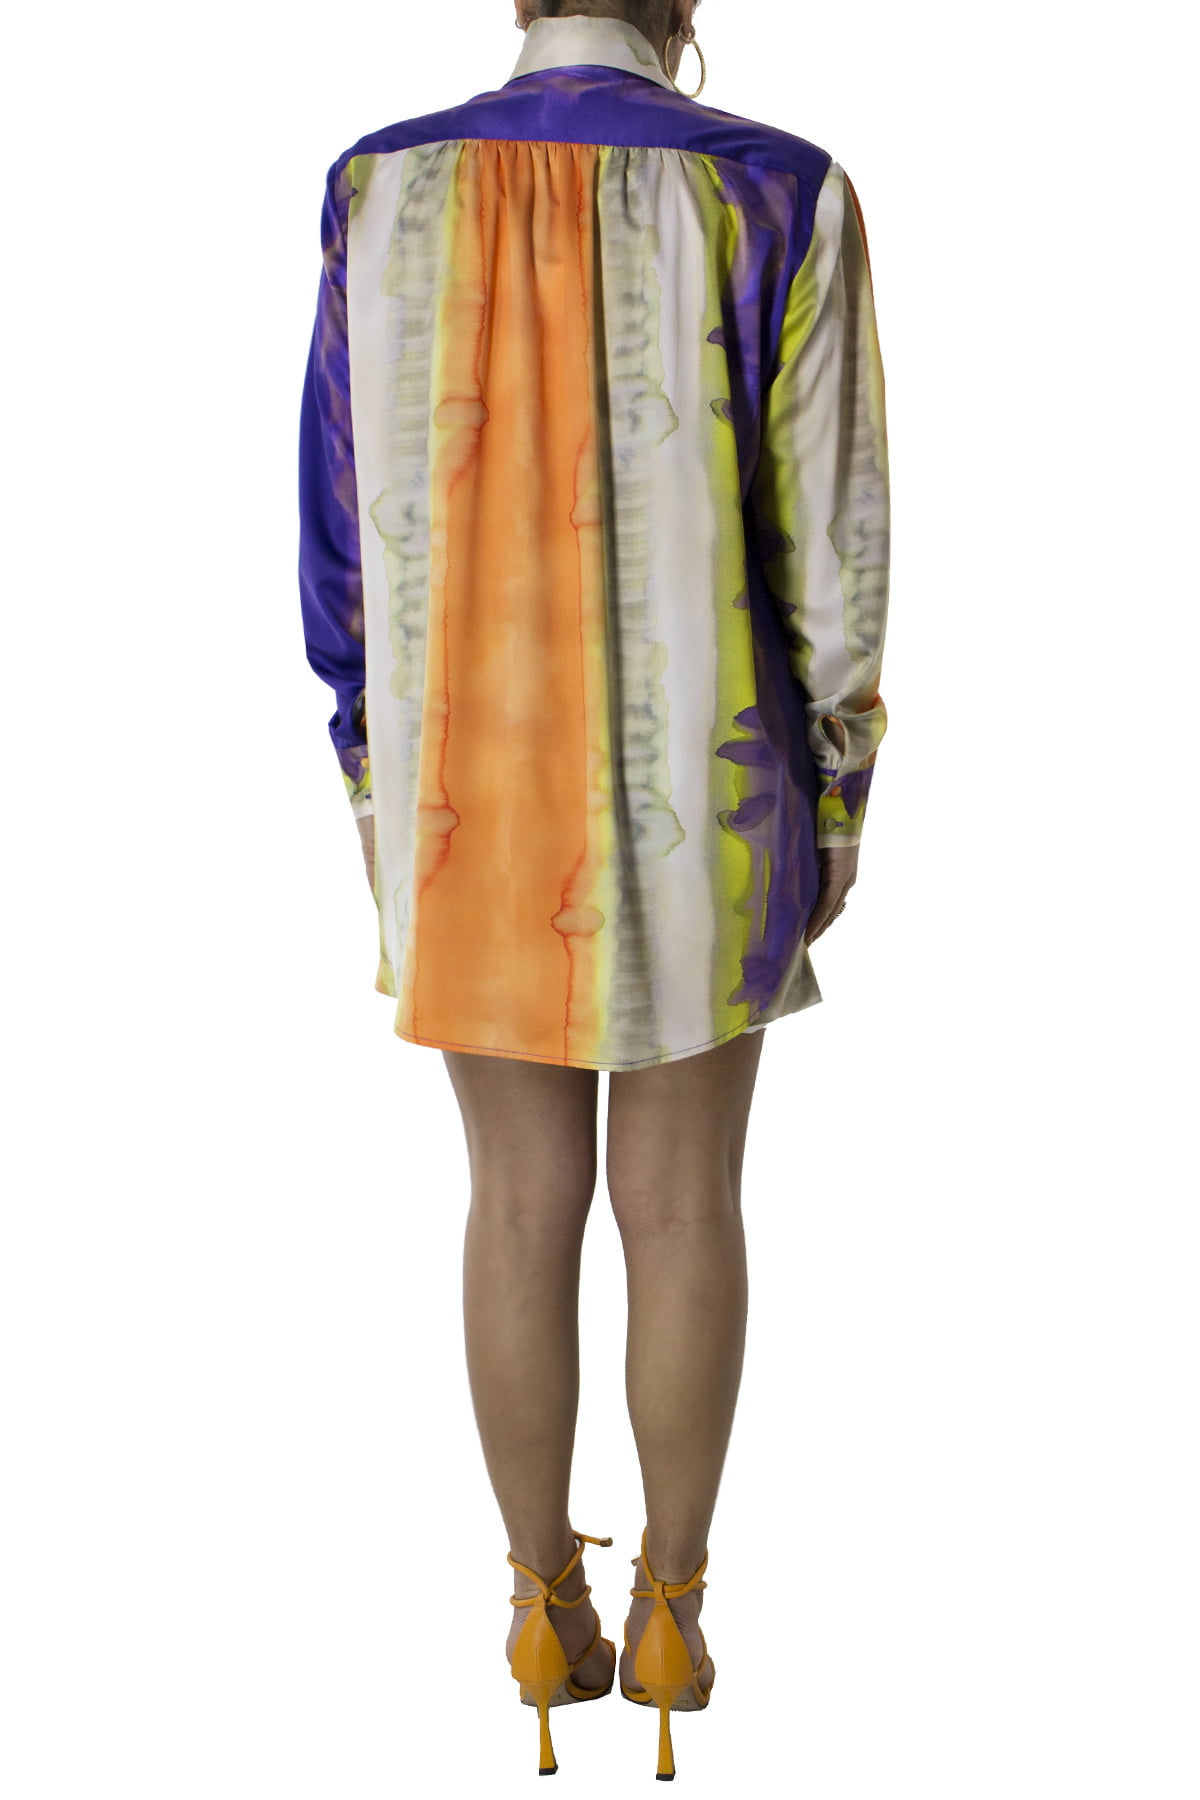 Camicia donna oversize in raso lucido con spalline removibili bottoni in tessuto tono su tono